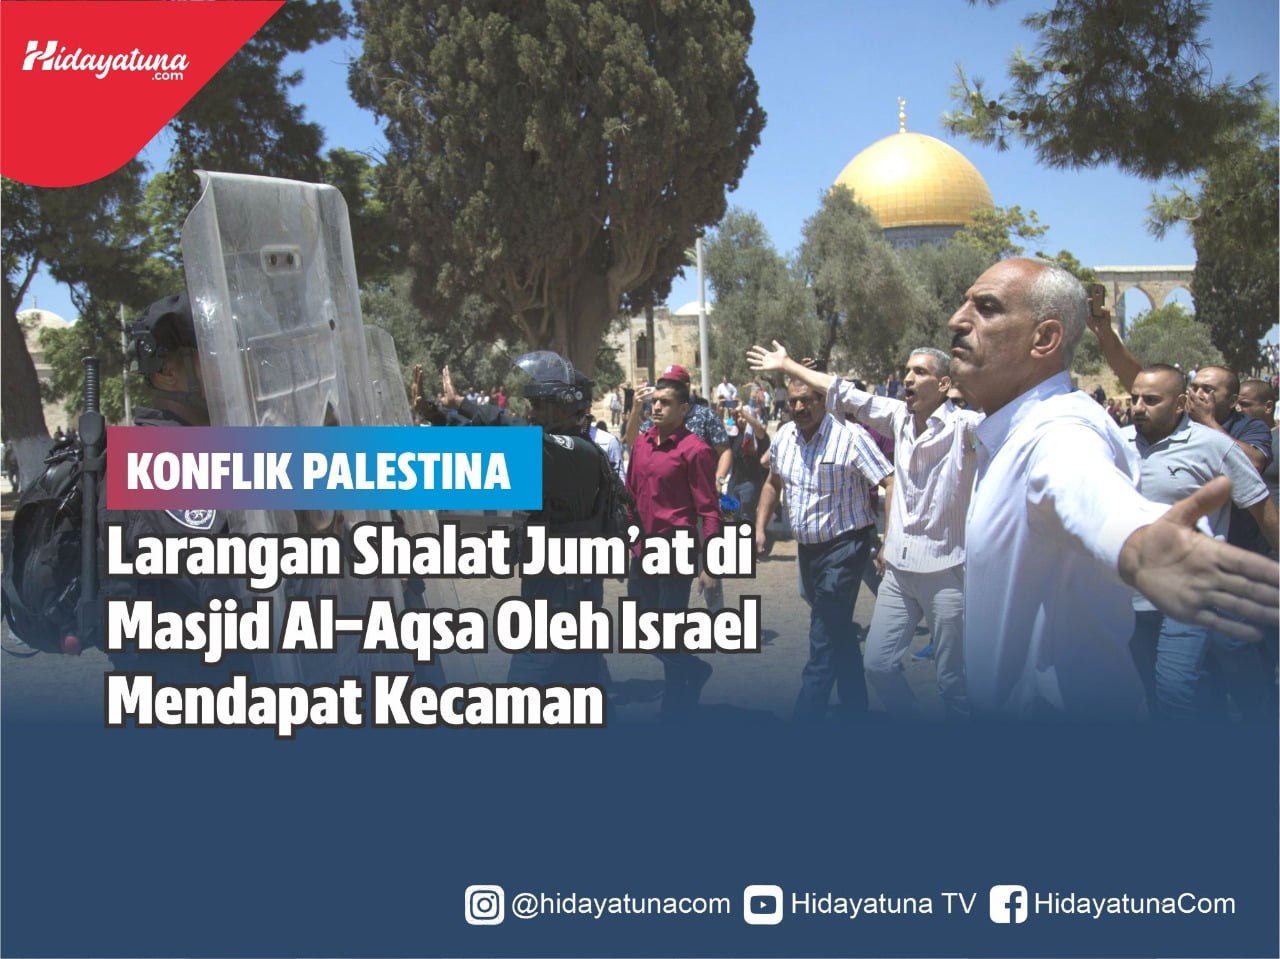  Larangan Shalat Jum’at di Masjid Al-Aqsa Oleh Israel Mendapat Kecaman